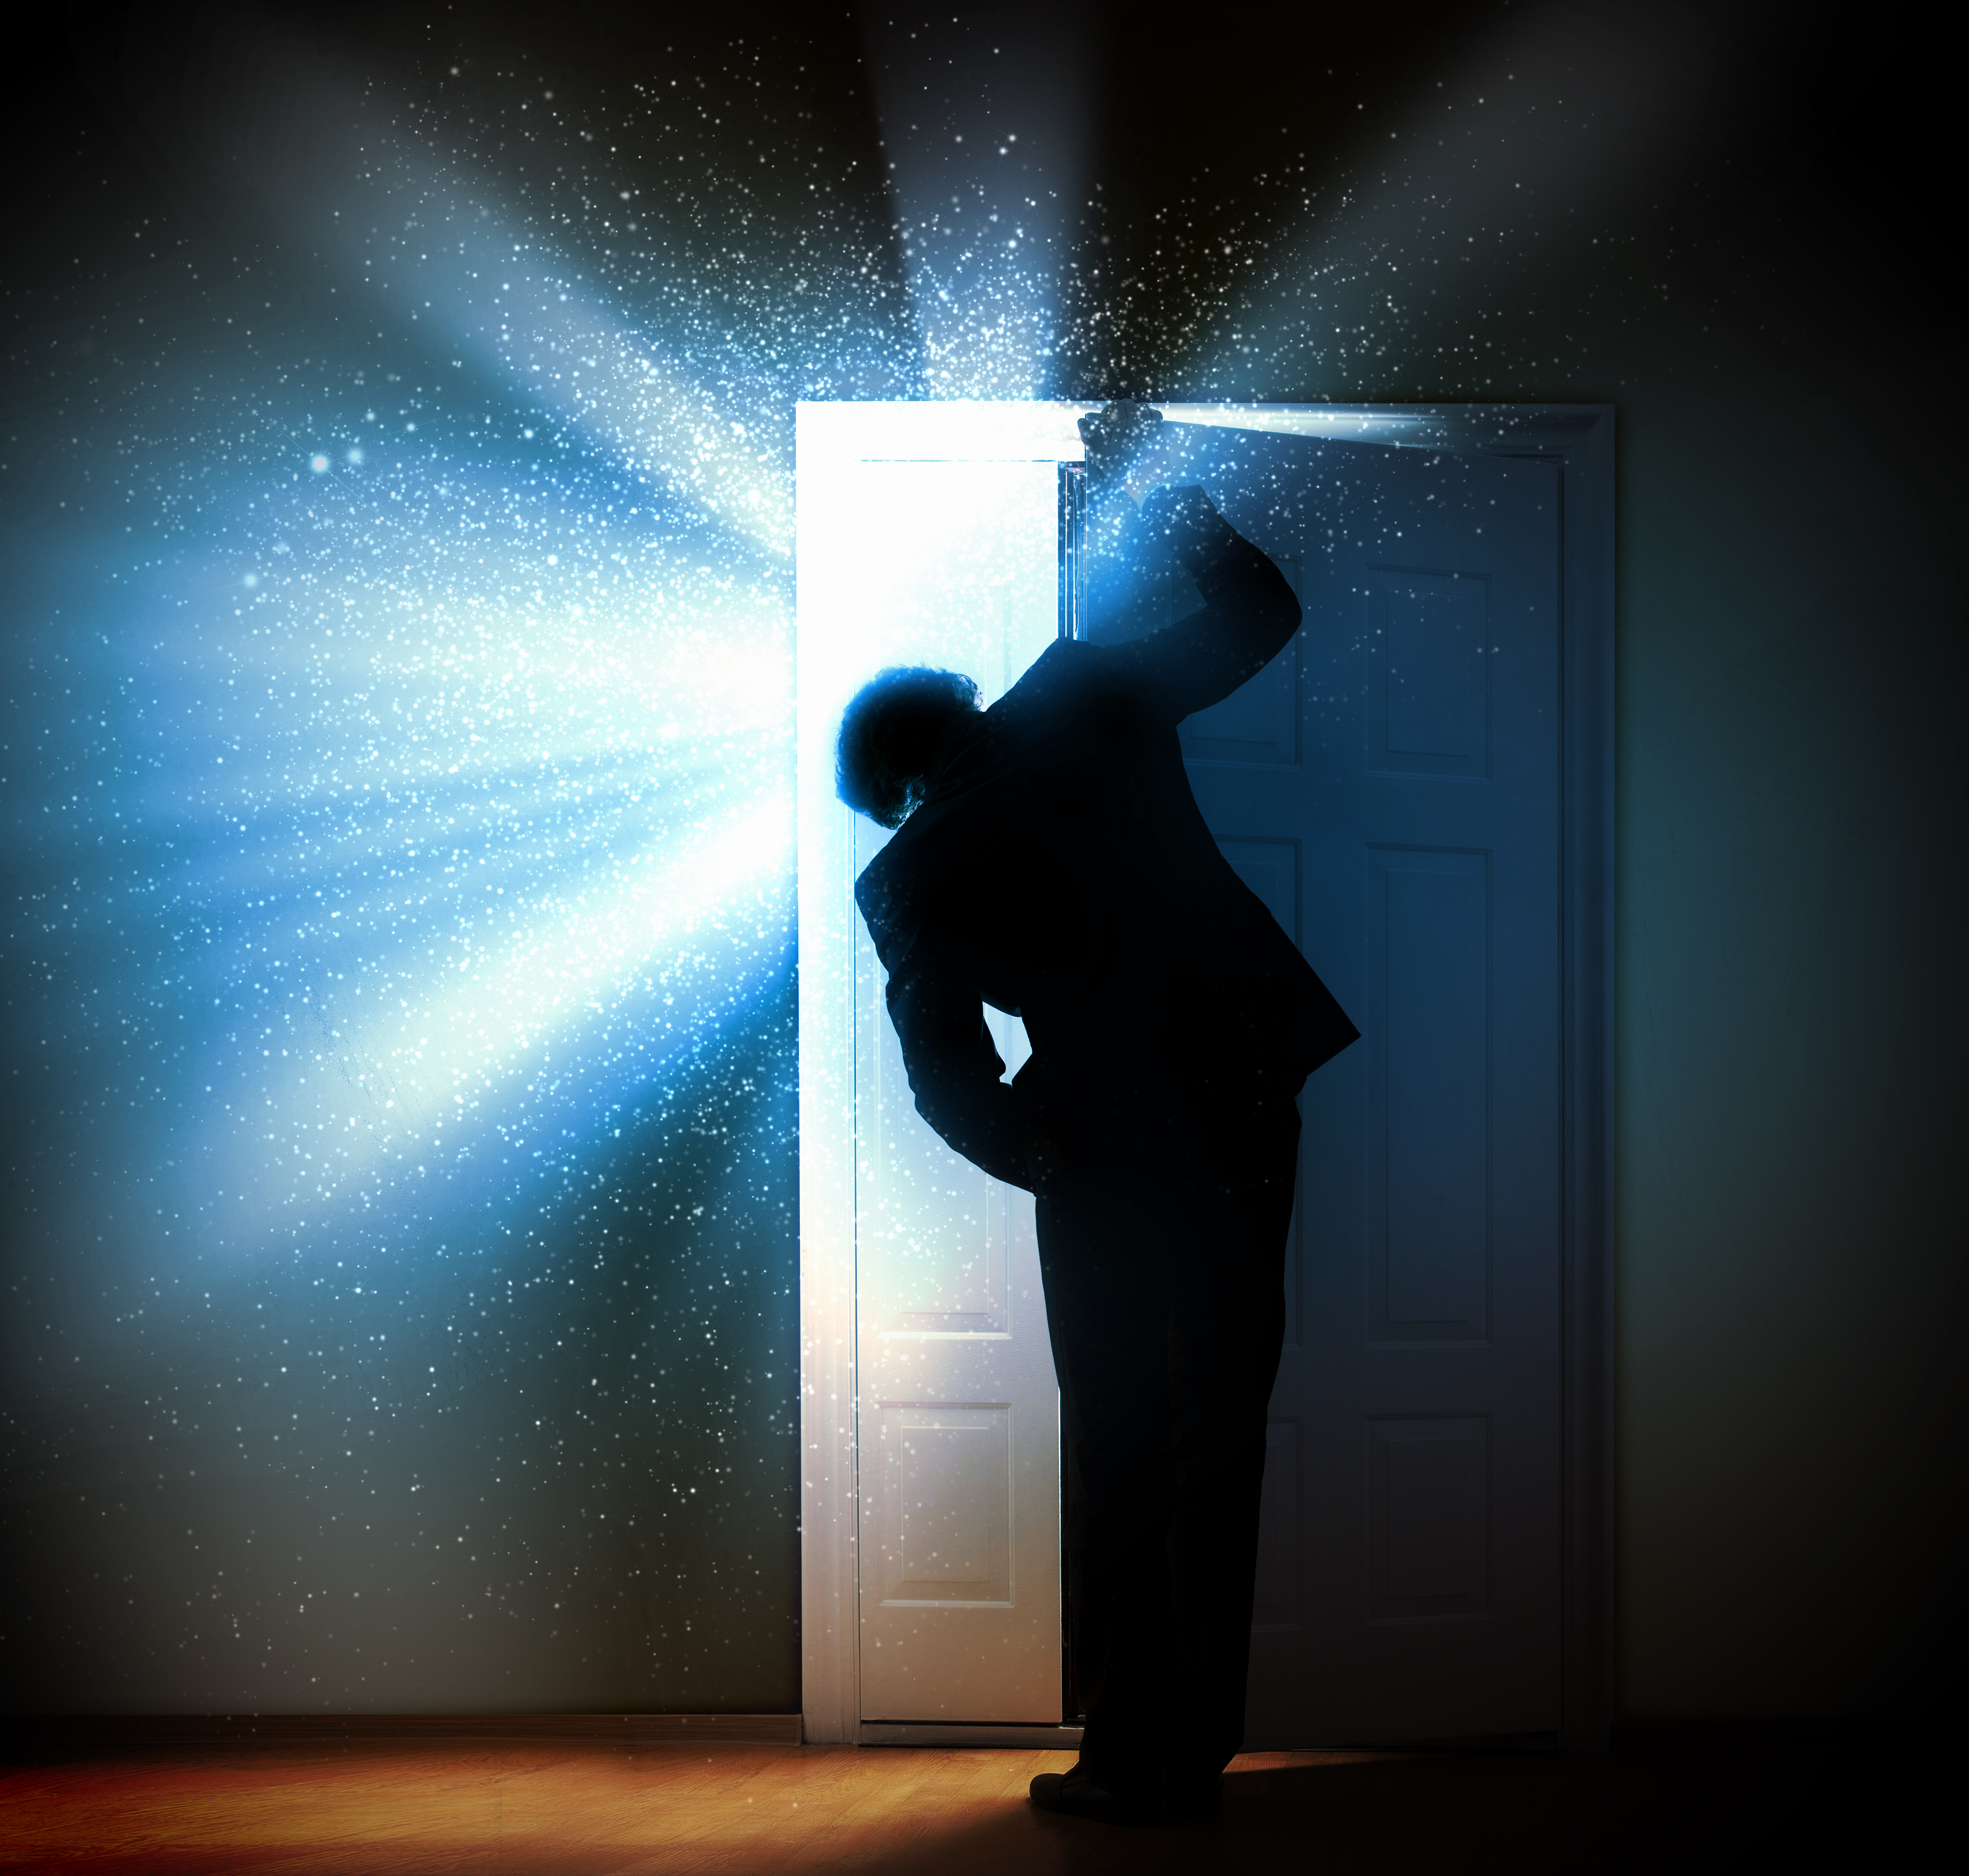 Сердцам людей откроем дверь. Дверь в подсознание. Открытая дверь свет. Заглядывает в дверь. Дверь в темноте.